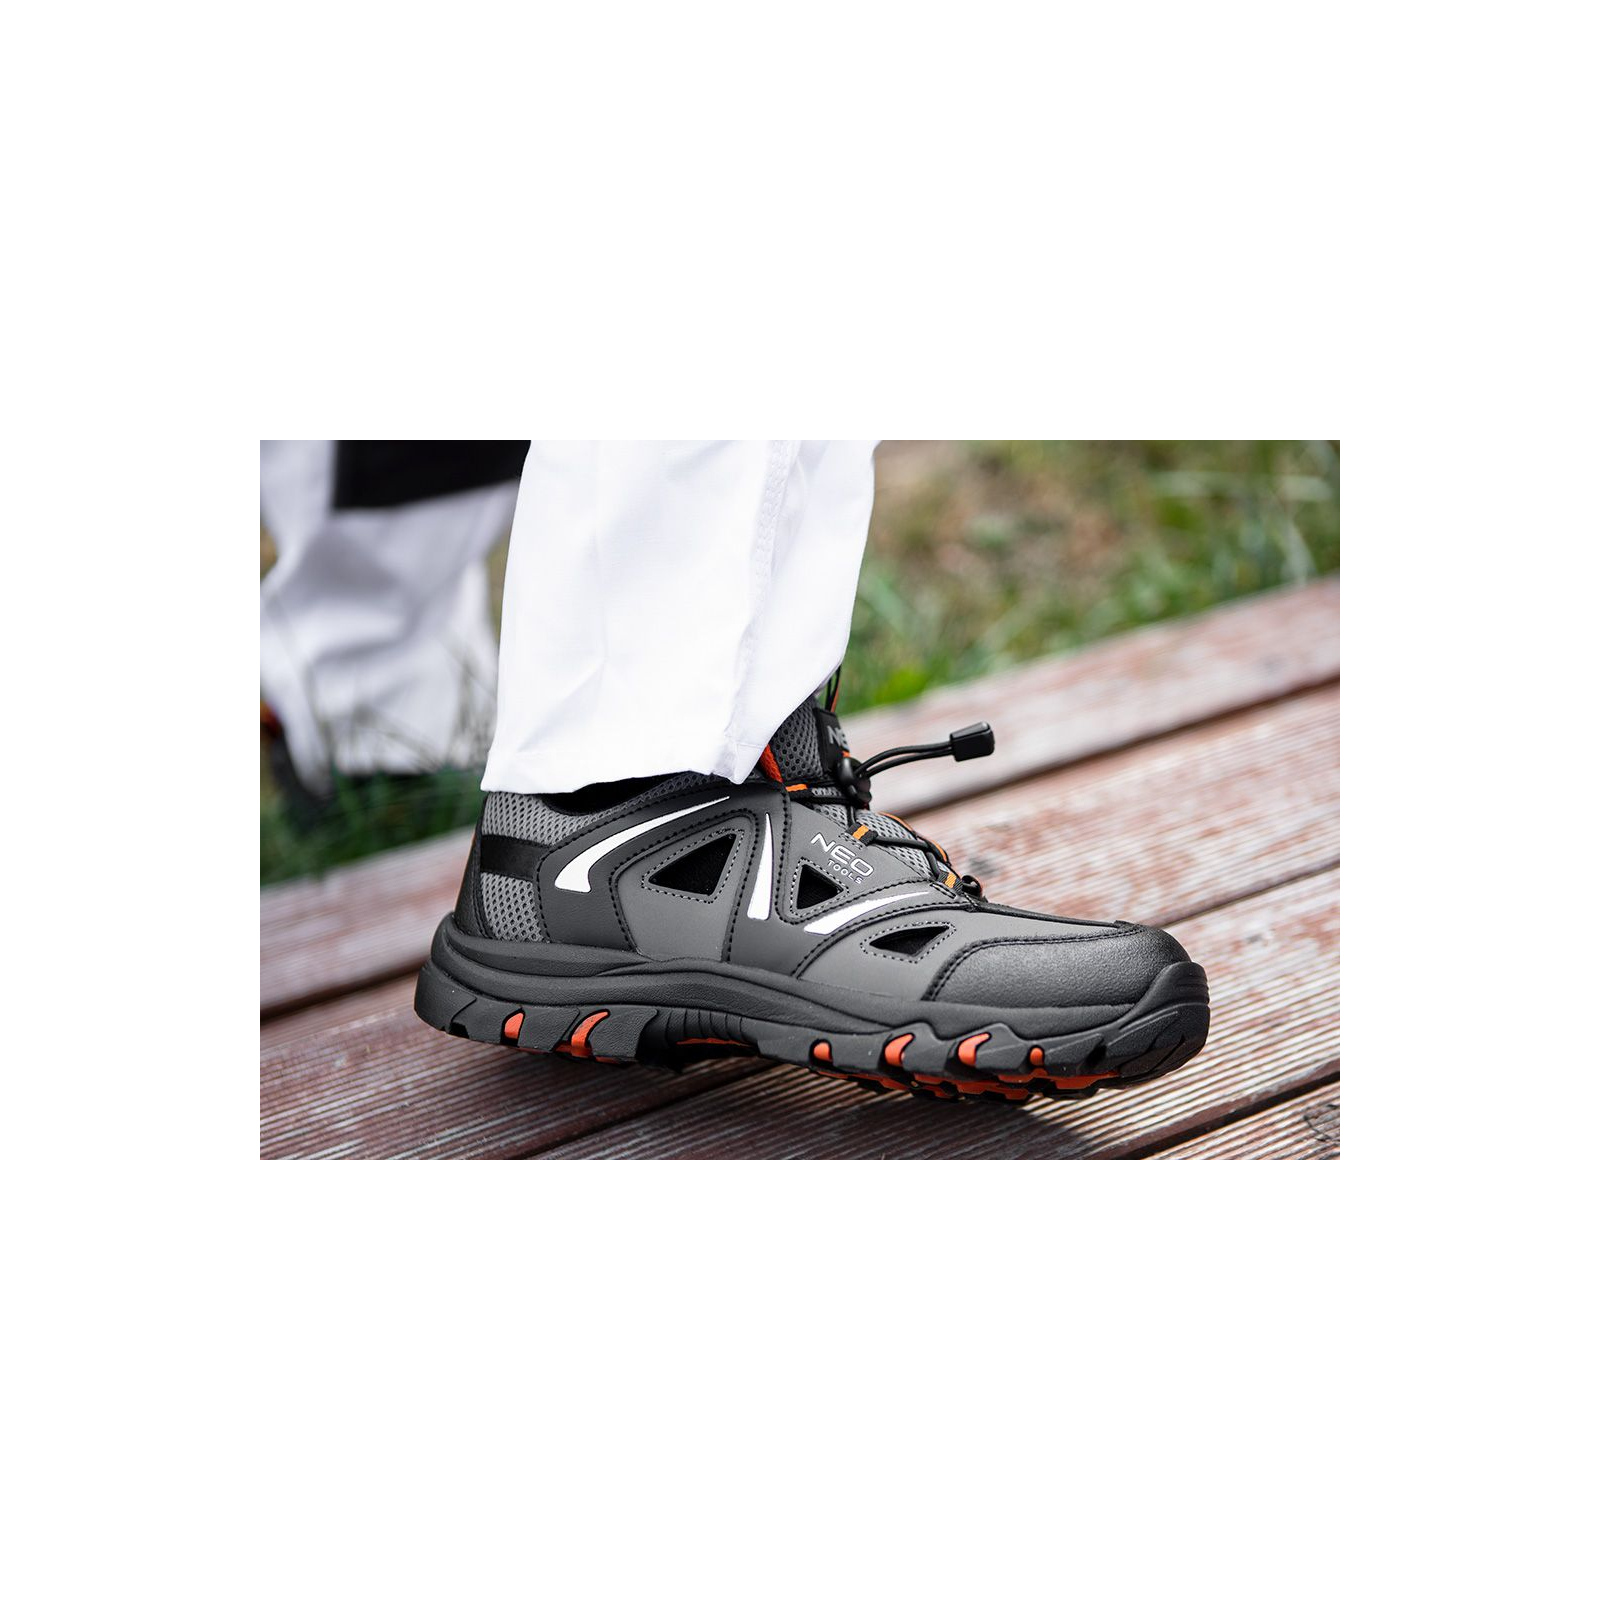 Ботинки рабочие Neo Tools кроссовки дышащие, подошва EVA, класс защиты OB, SRA, р.44 (82-725) изображение 3